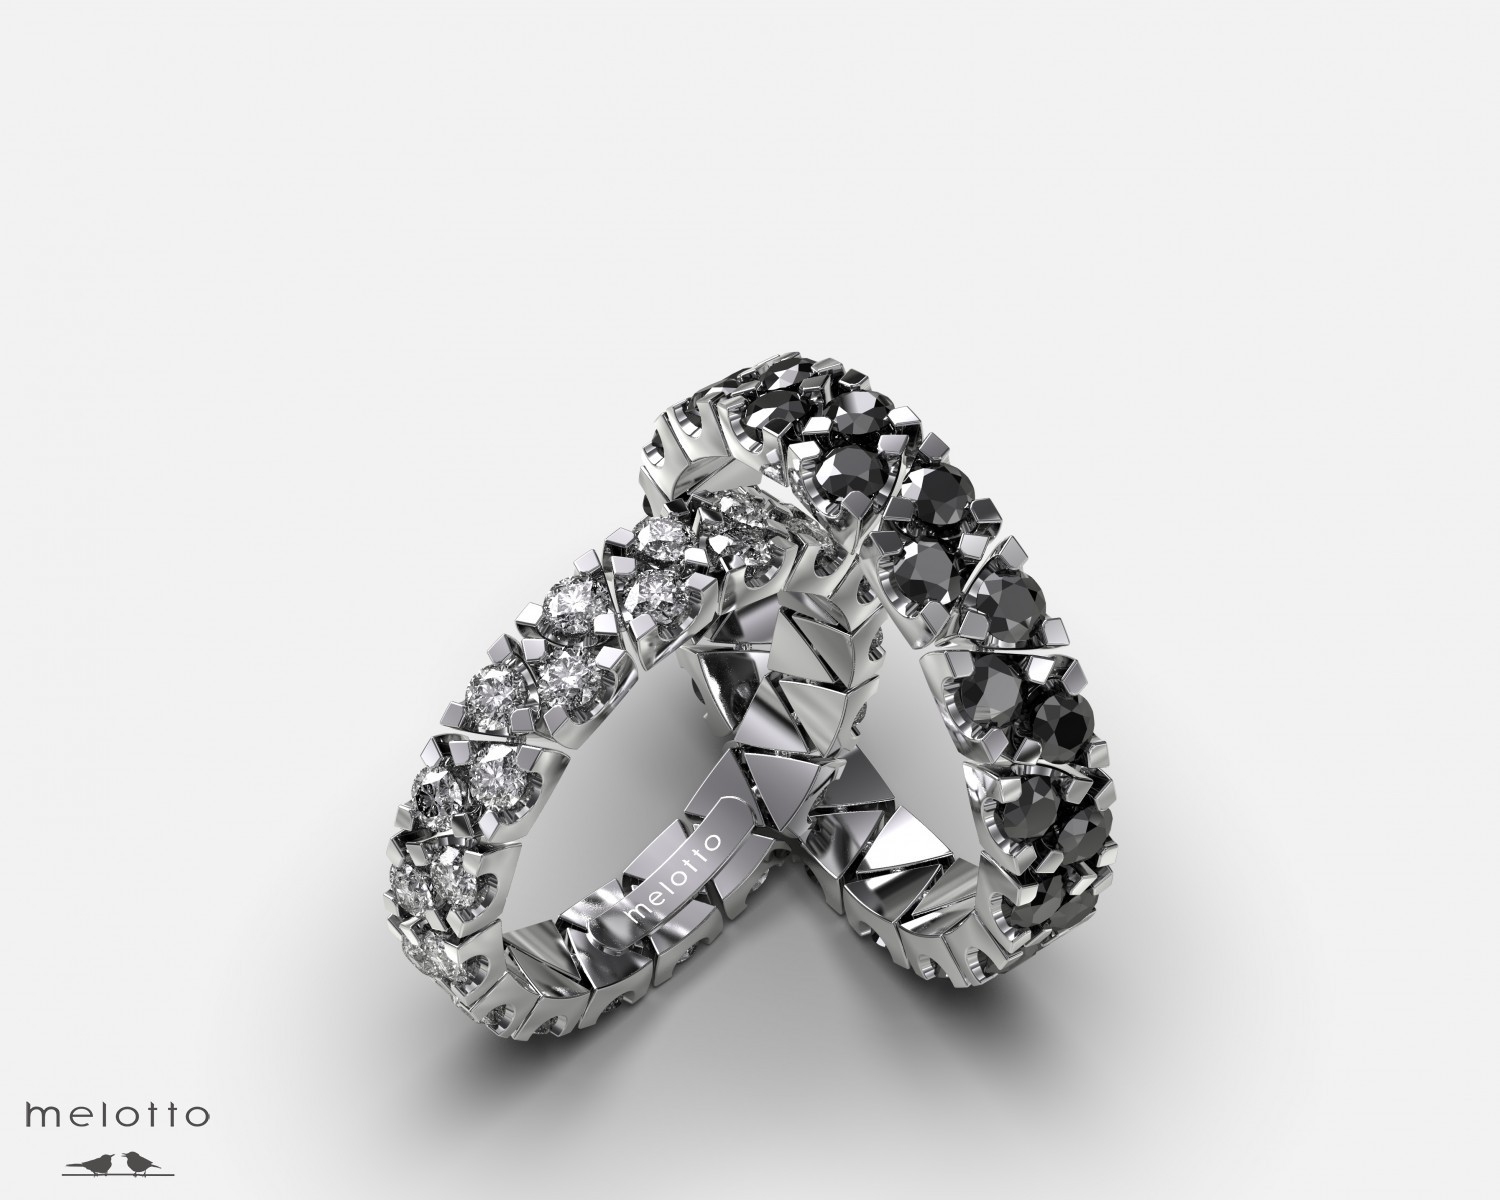 Самые дорогие обручальные кольца в мире: свадебные кольца знаменитостей и членов королевских семей